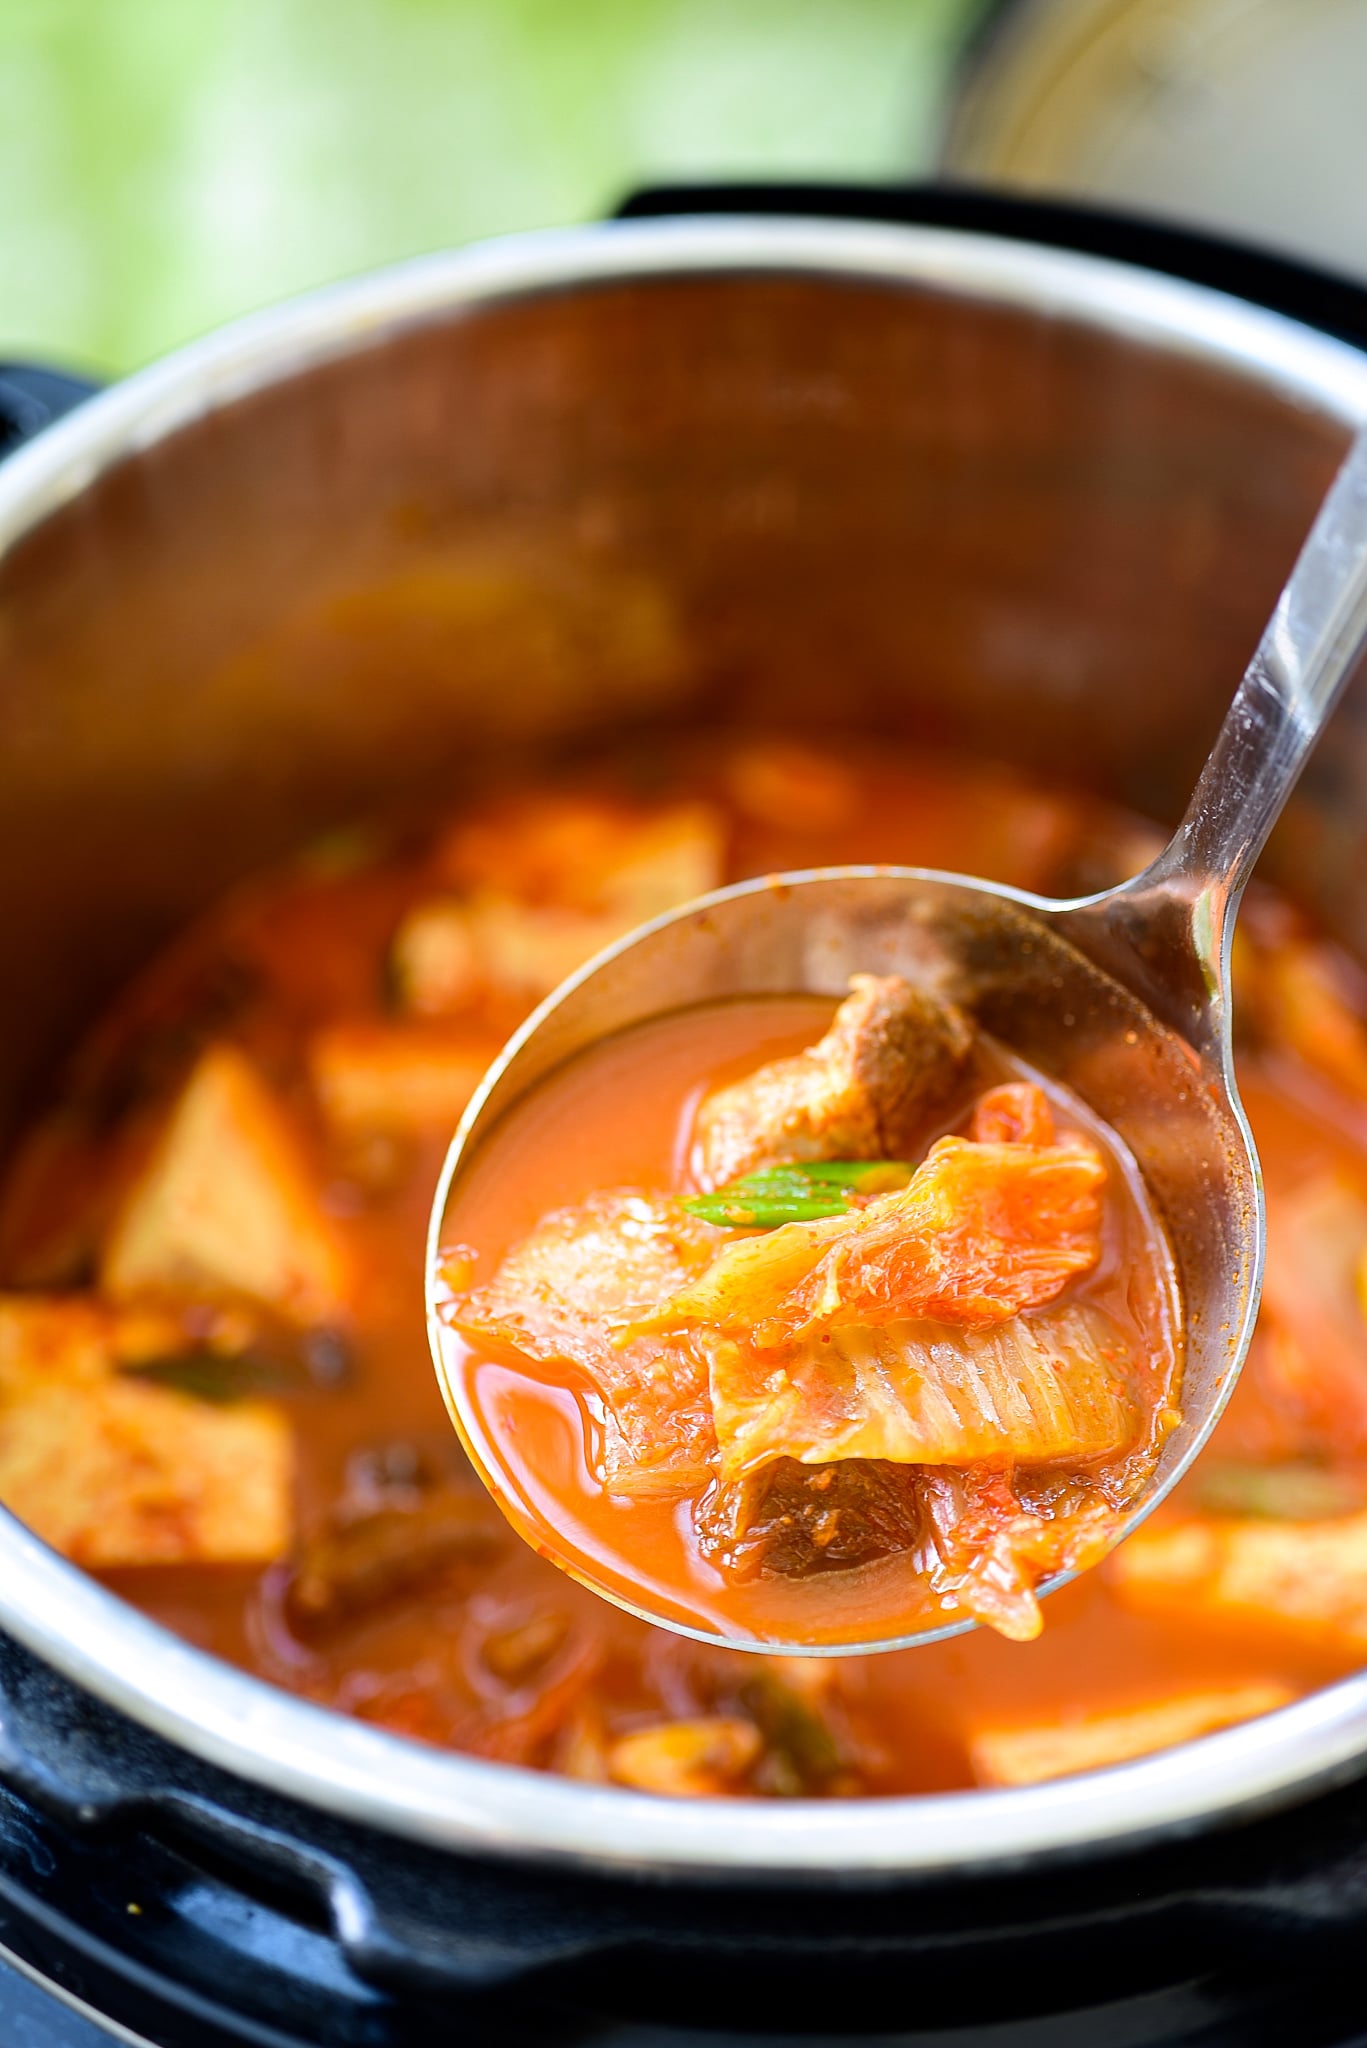 DSC 2014 1 - Instant Pot Kimchi Jjigae (Stew)